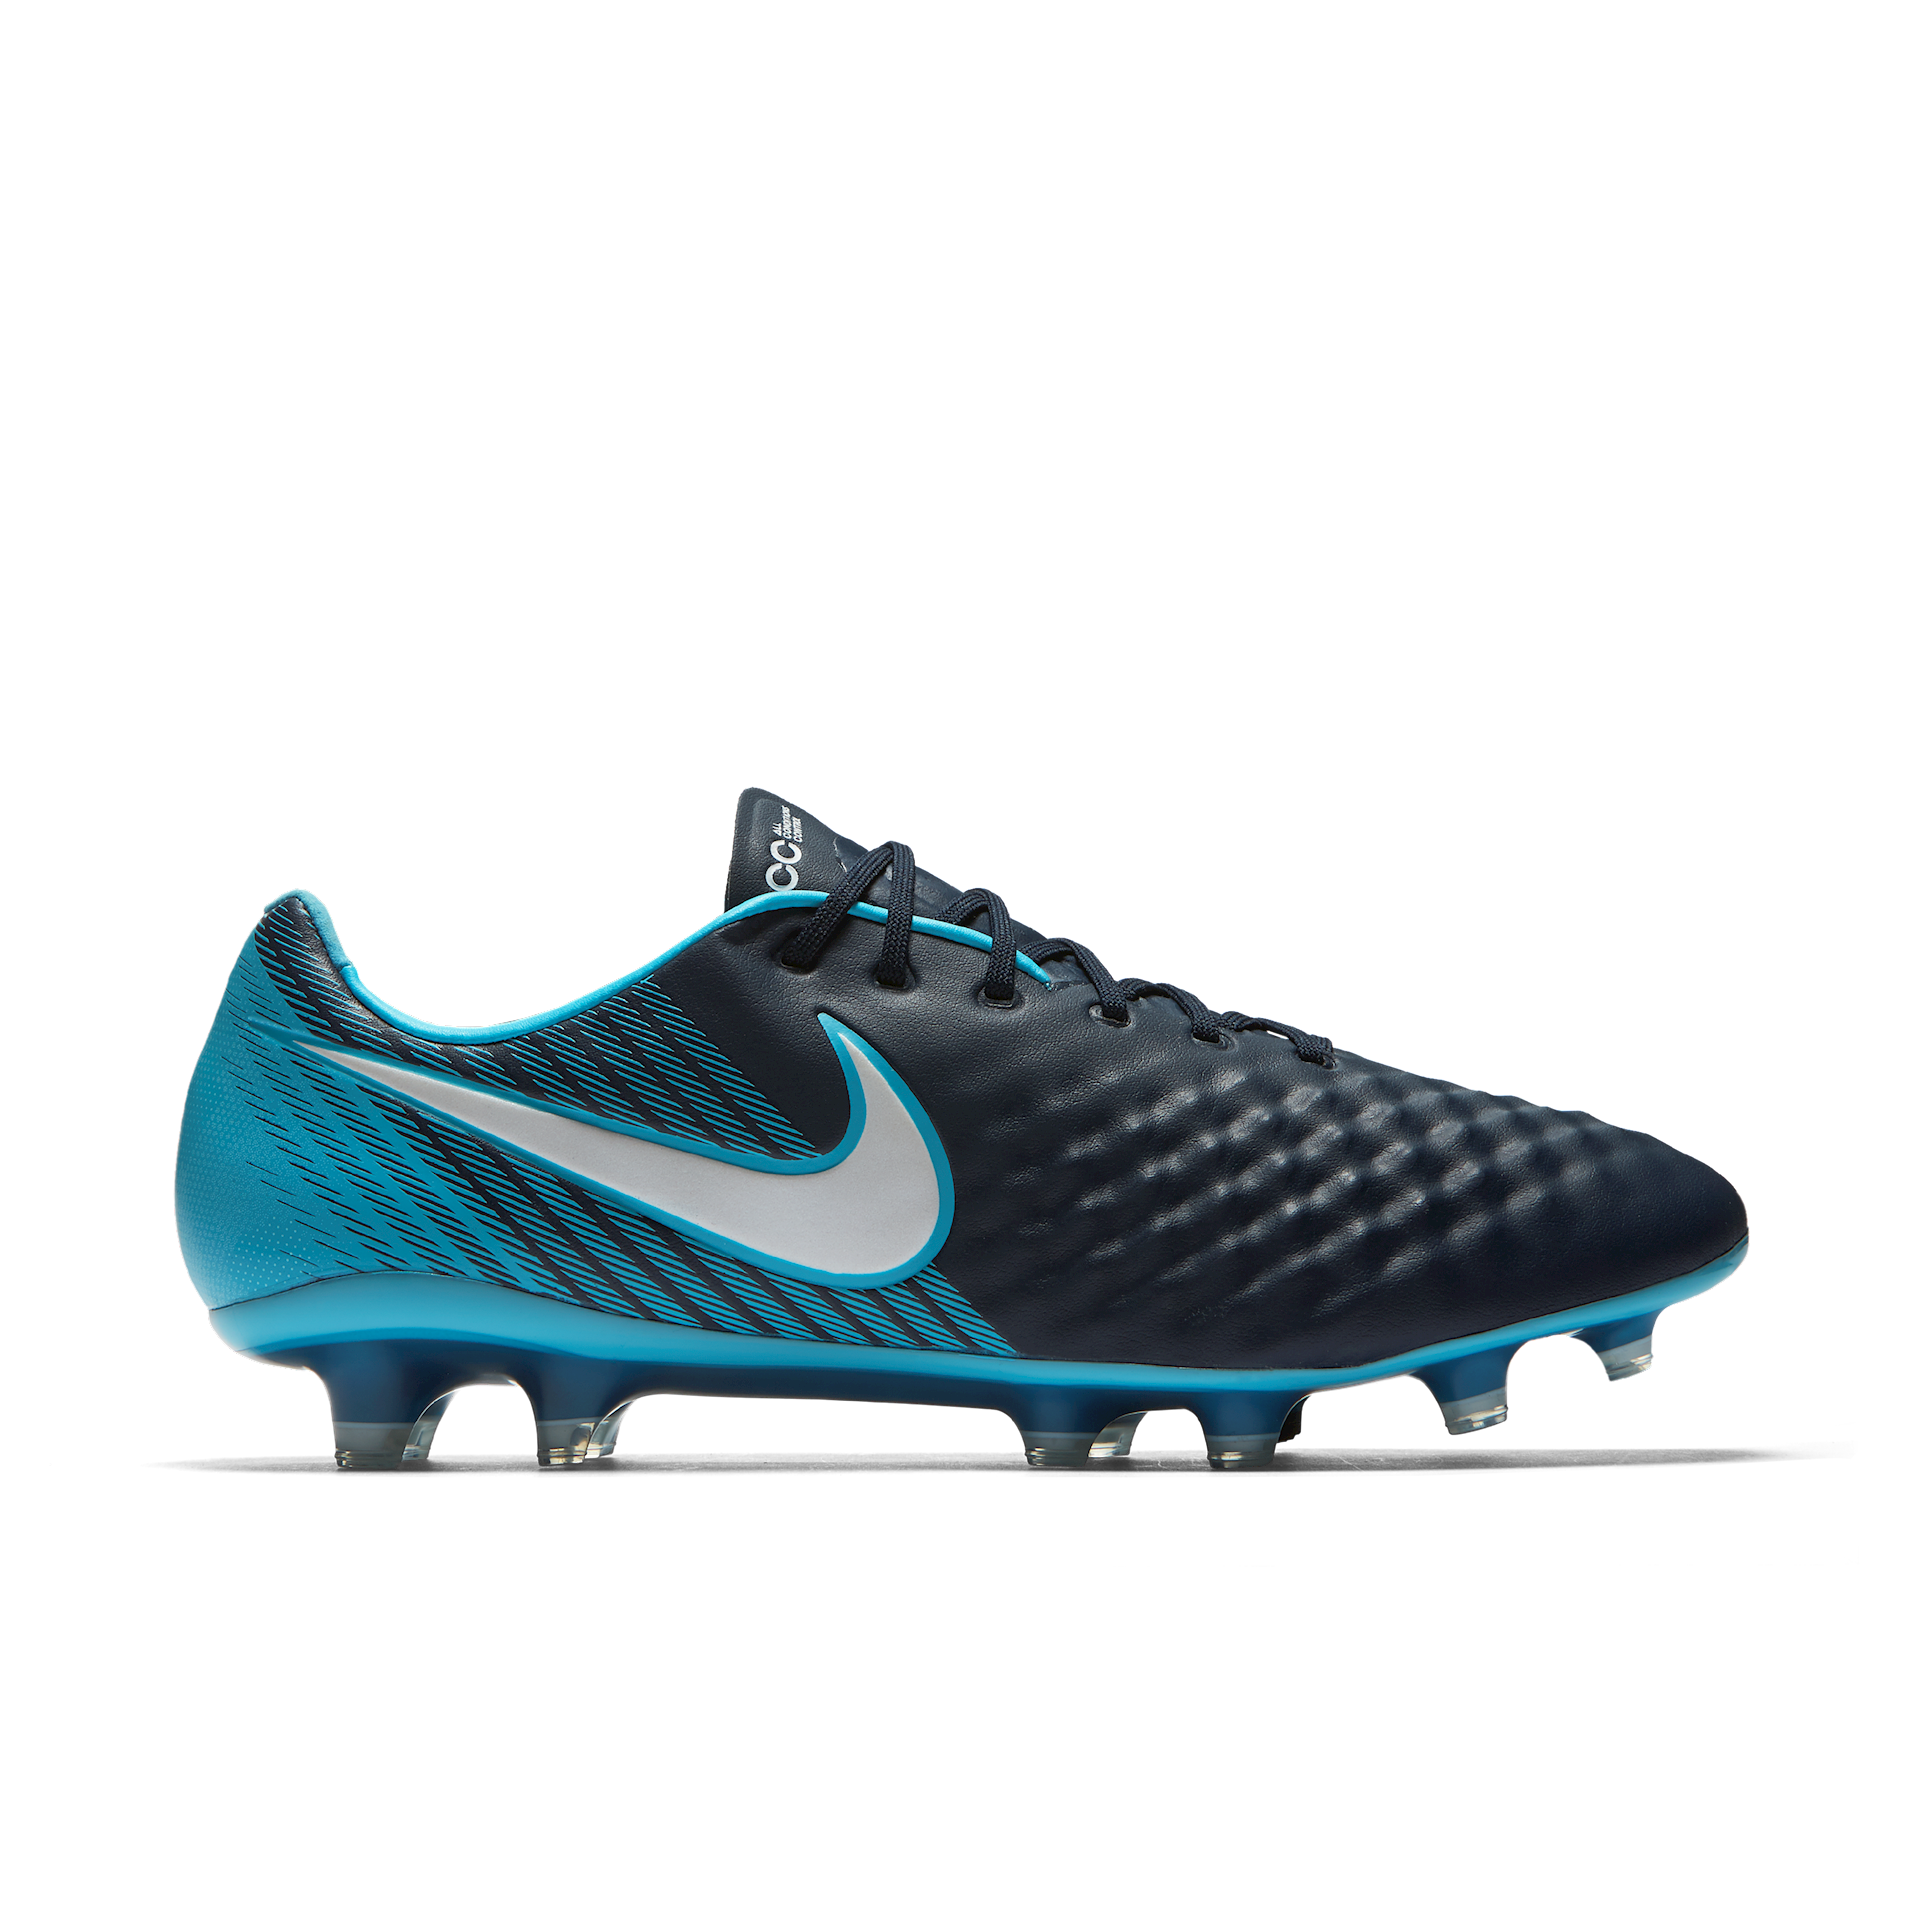 pijp Middellandse Zee Lucht Nike Magista Obra II PLAY ICE voetbalschoenen - Voetbal-schoenen.eu